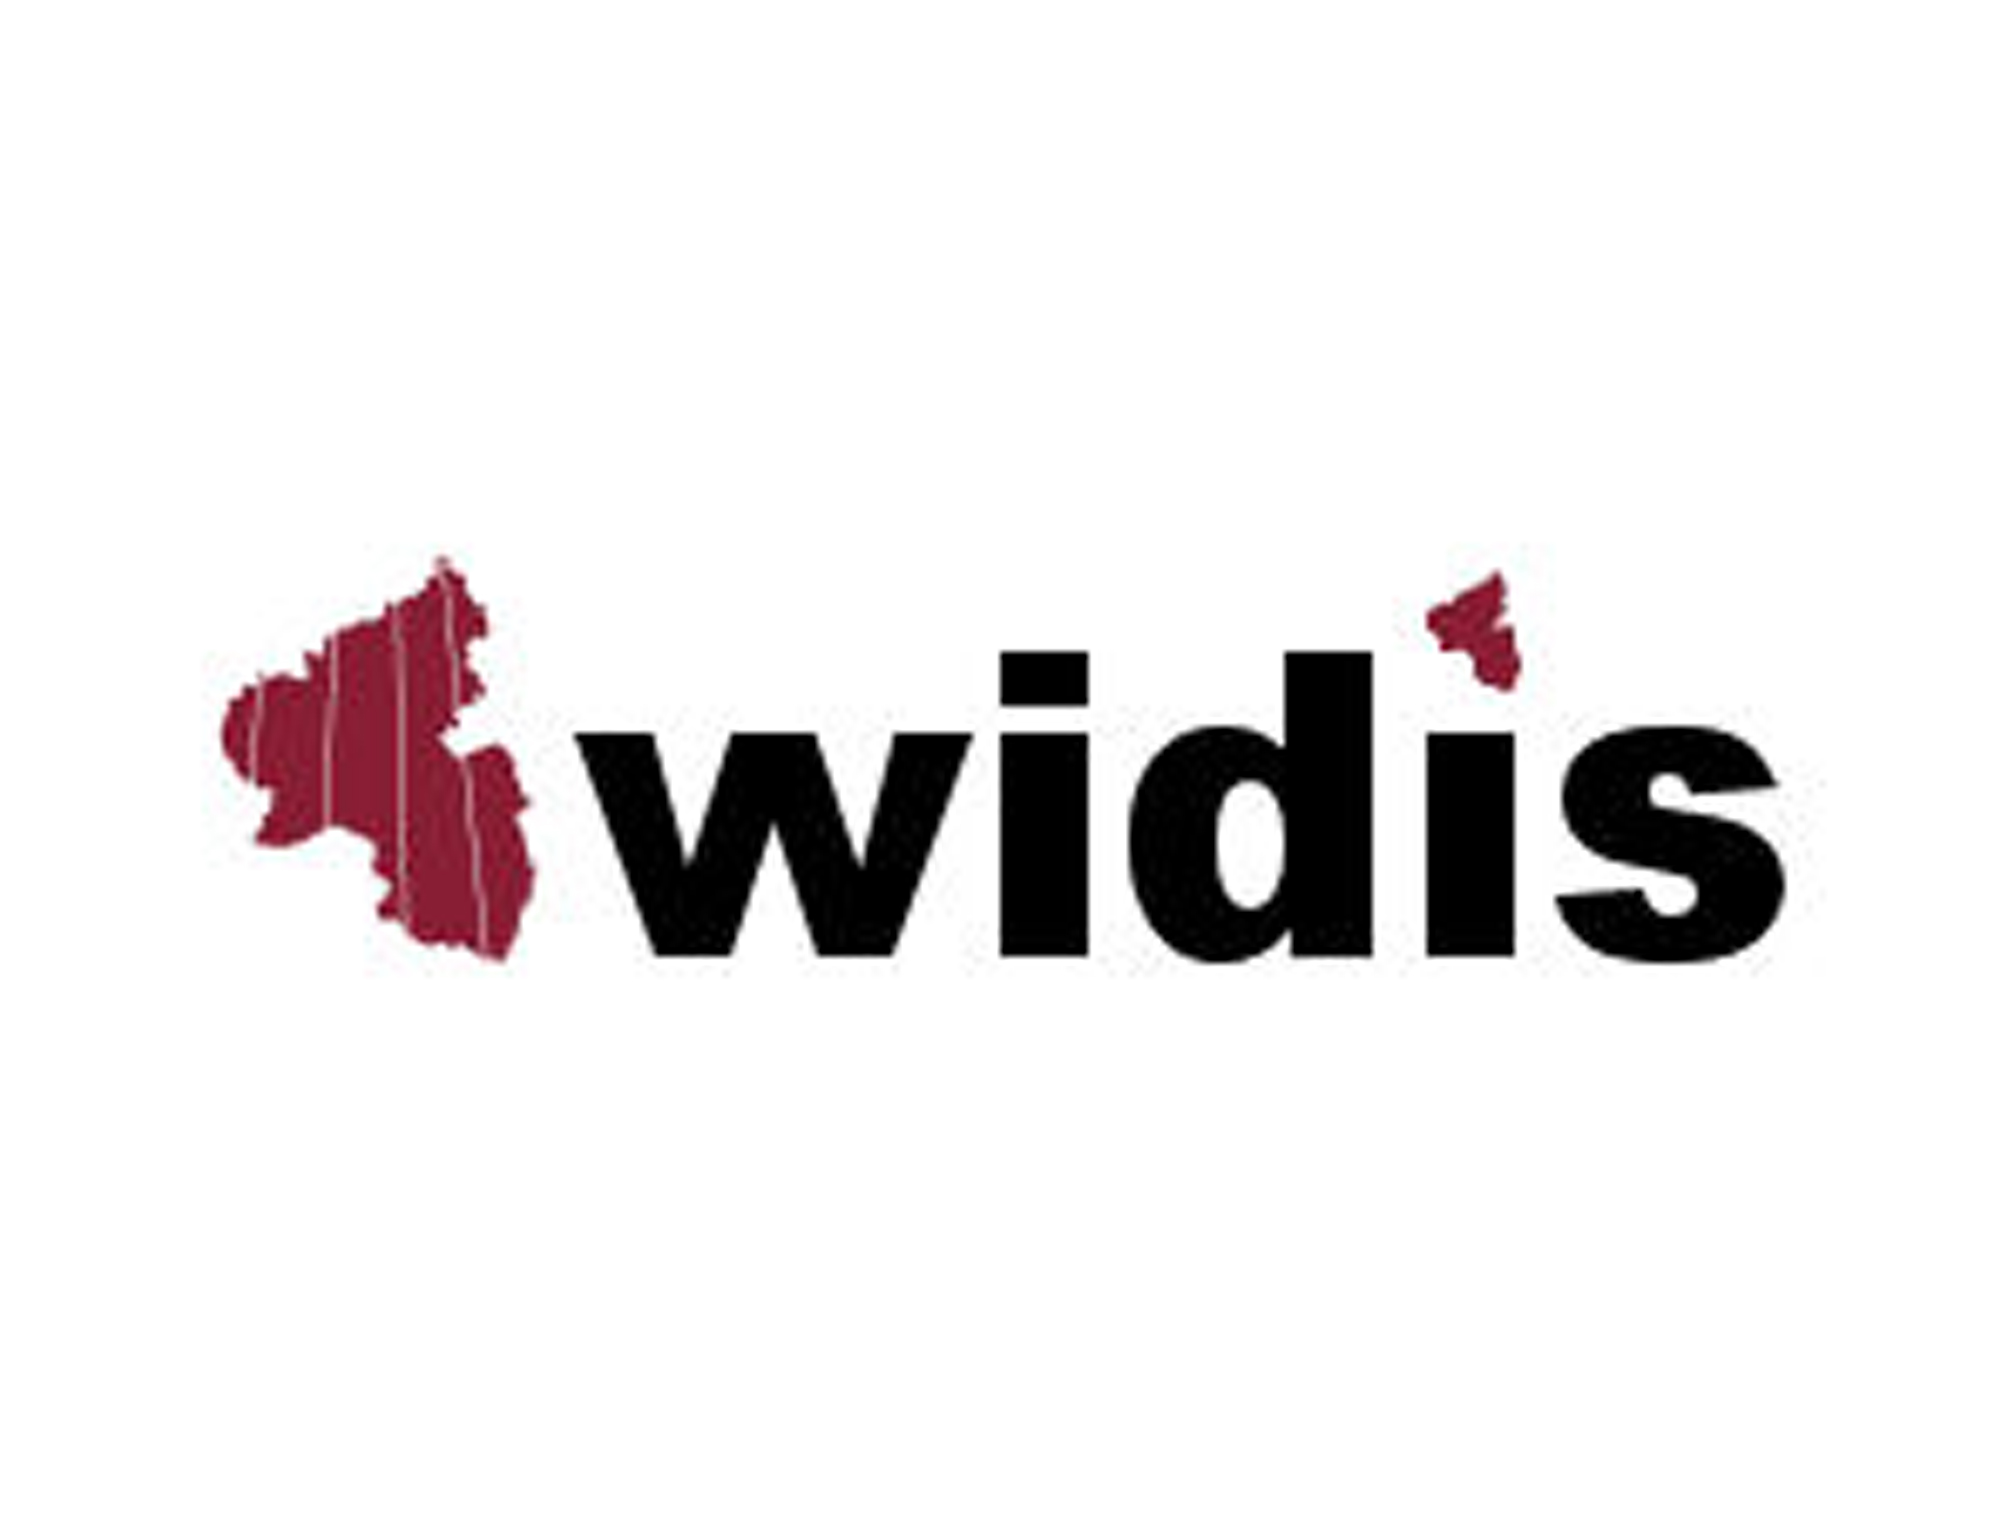 Logo mit dem Text "Widis" 